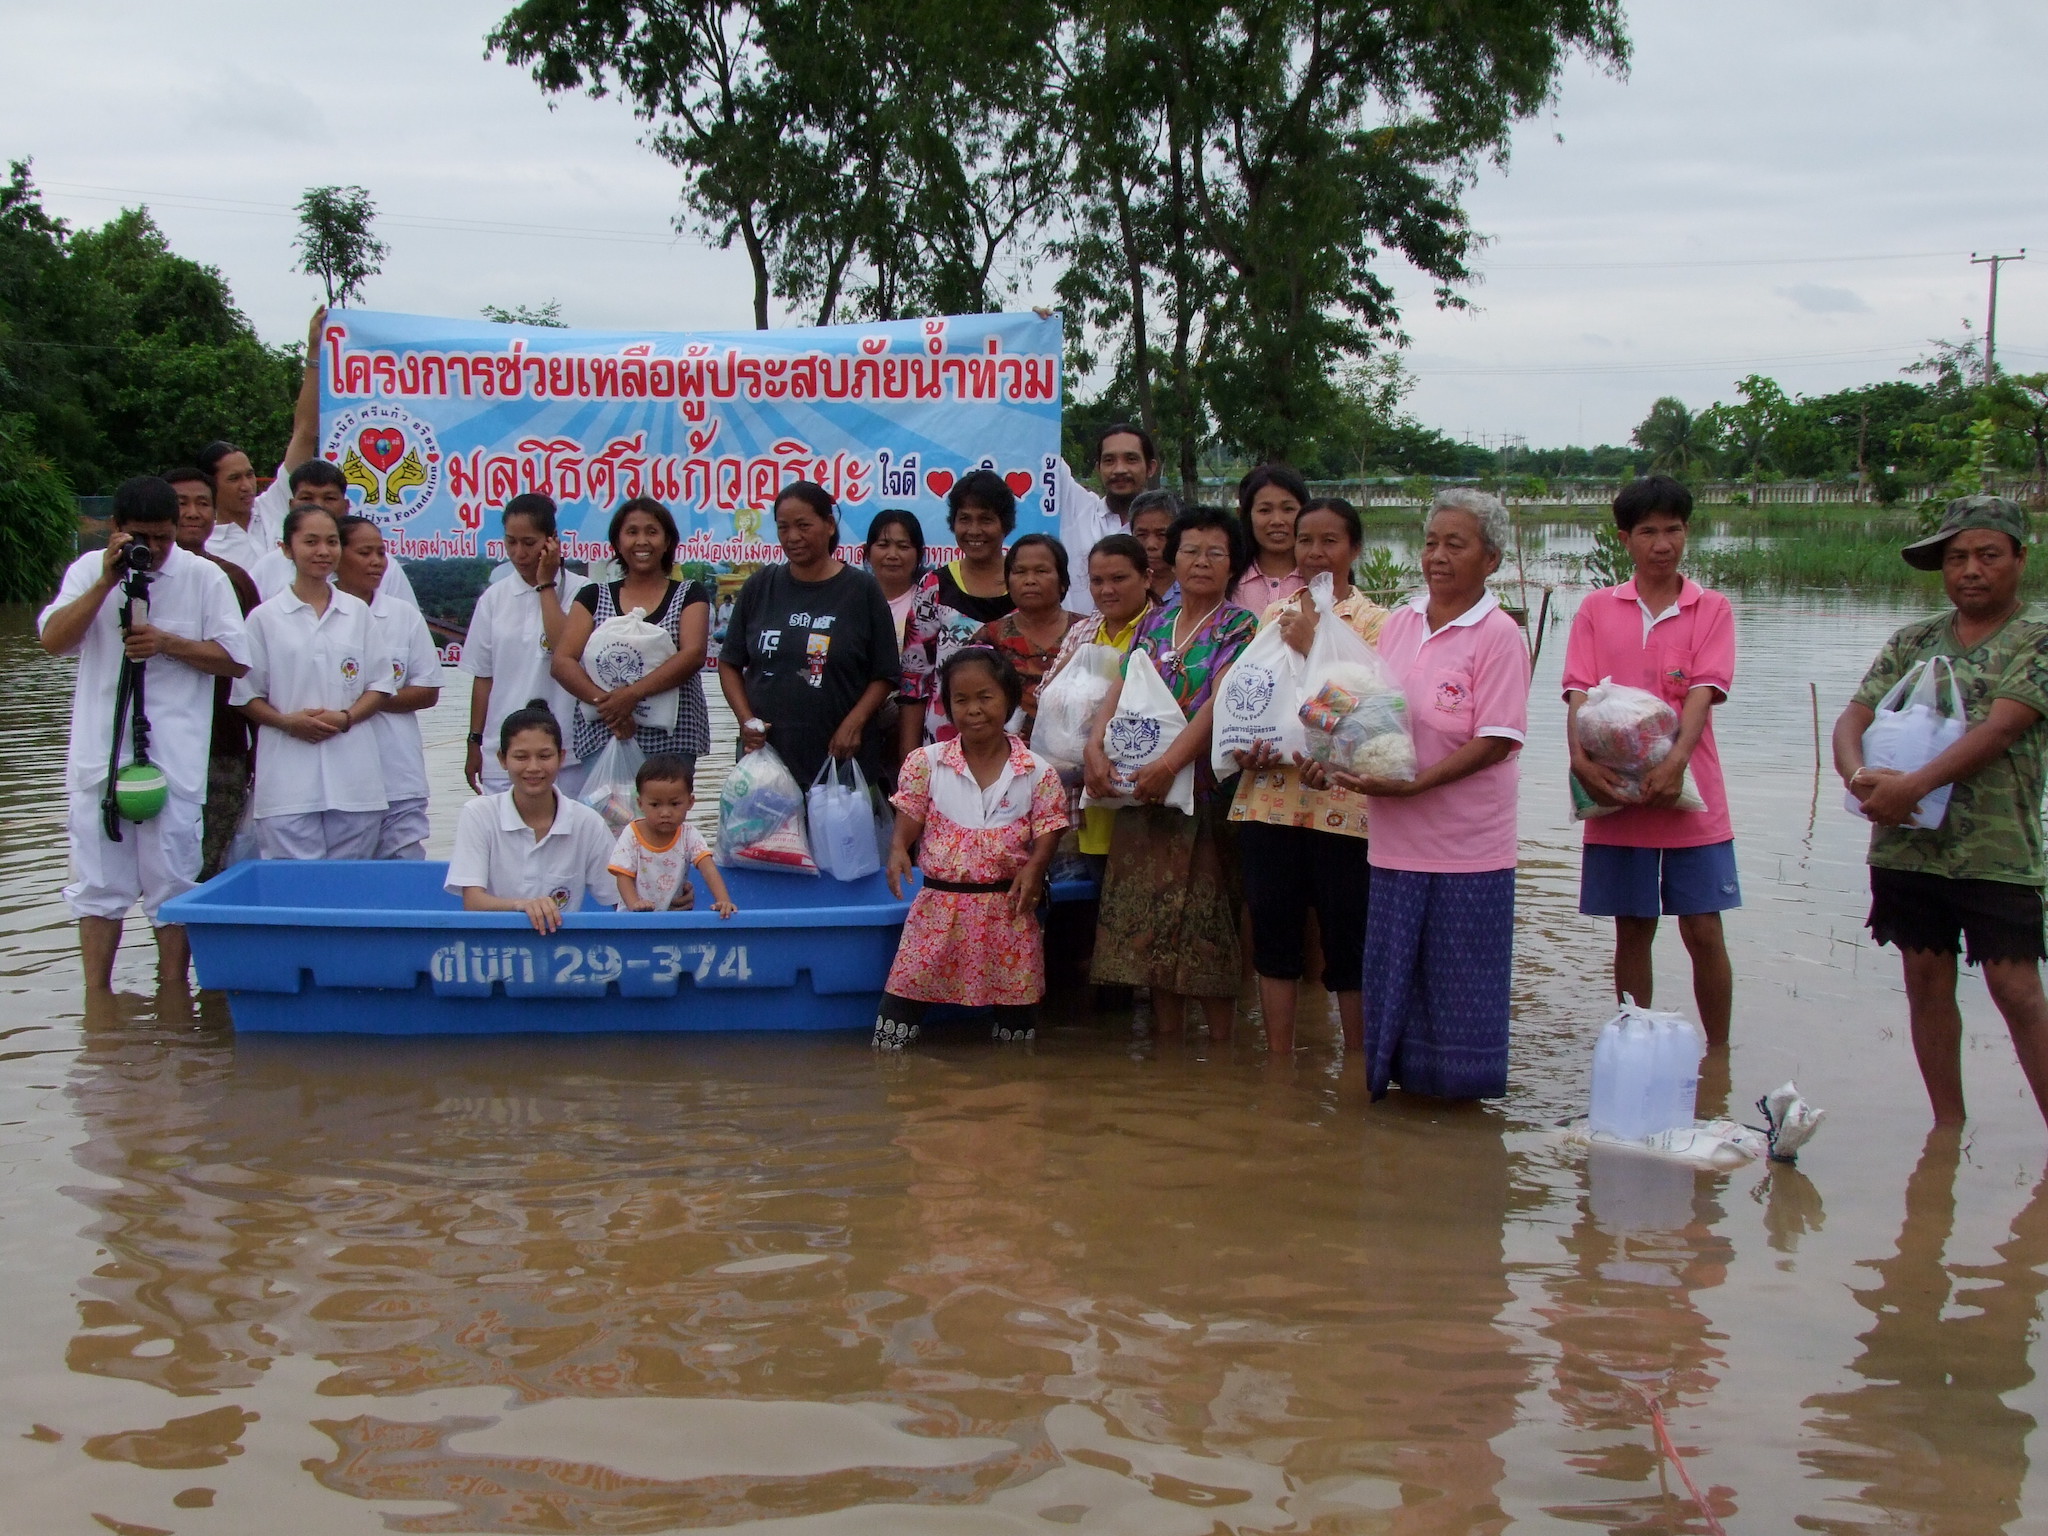 โครงการช่วยผู้ประสบภัยน้ำท่วมจังหวัดขอนแก่นครั้งที่ 1    วันที่ 3 ตุลาคม 2554 ณ วัดป่าศิริวันวนาราม  ต.ในเมือง  อ.เมือง  จังหวัดขอนแก่น (ช่วยพระและประชาชนที่ถูกน้ำท่วมในตำบลพระลับ)